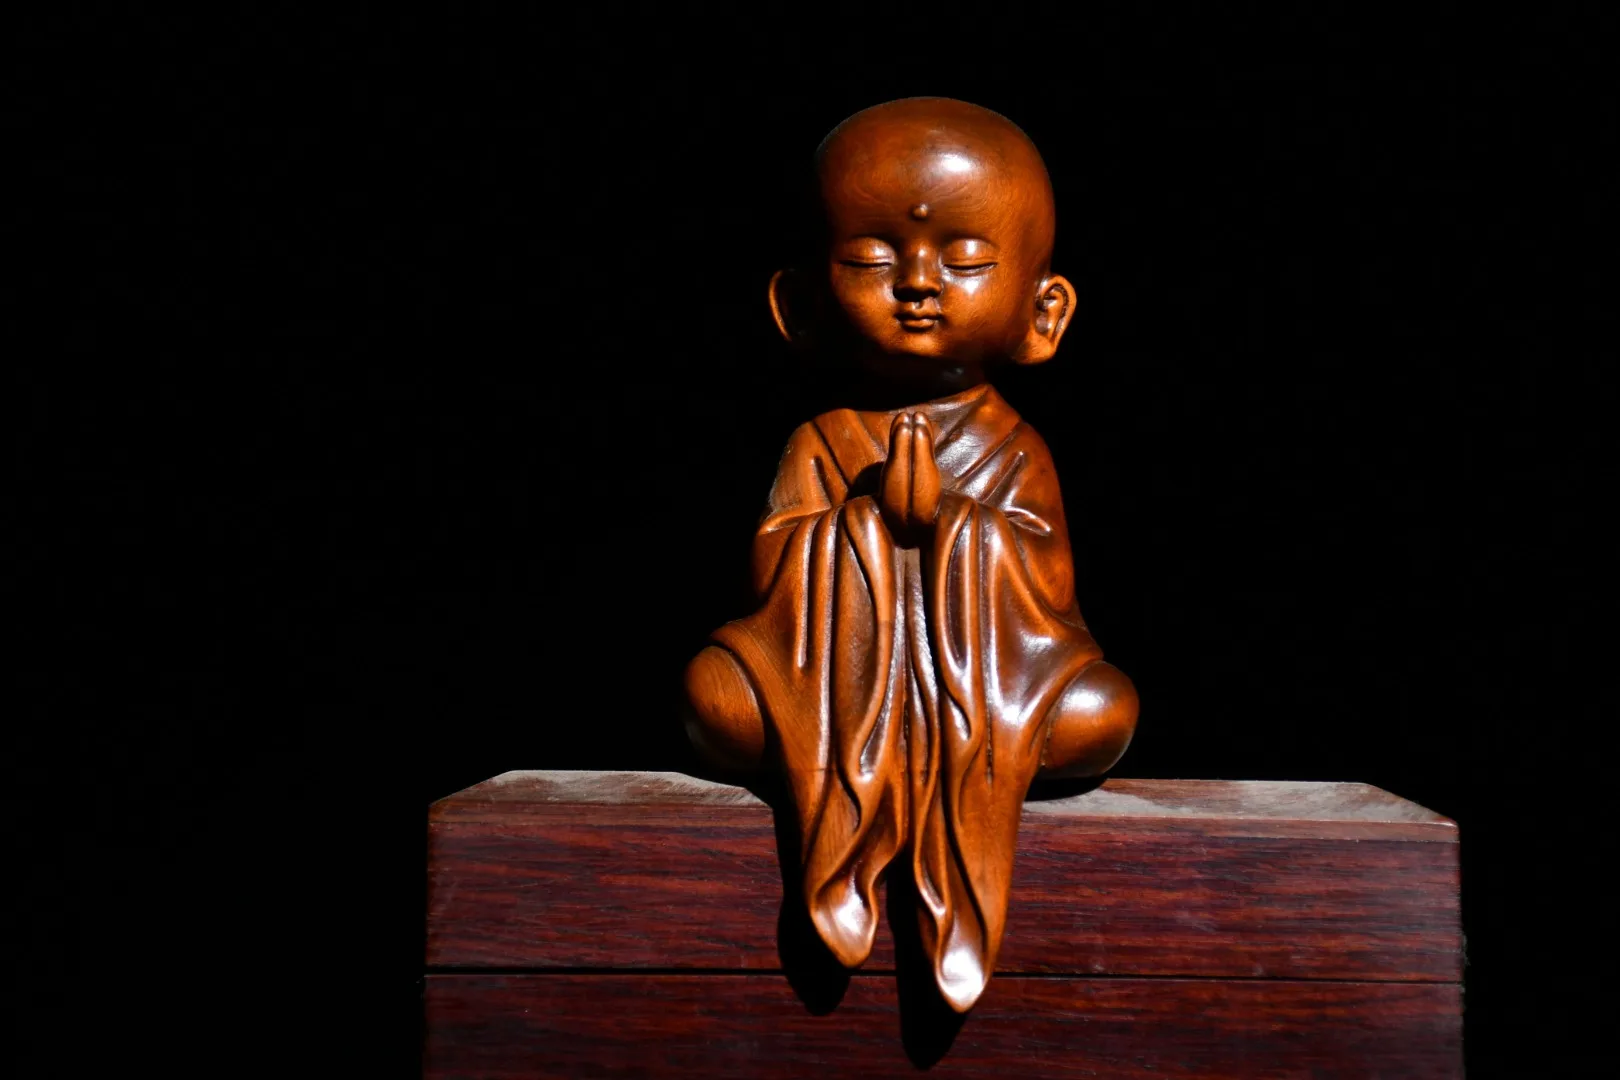 

5 авиапочту Китая (China Lucky старый самшита, выгравированный вручную фигурка монаха маленький монах медитации прозрения большое просвещение о...